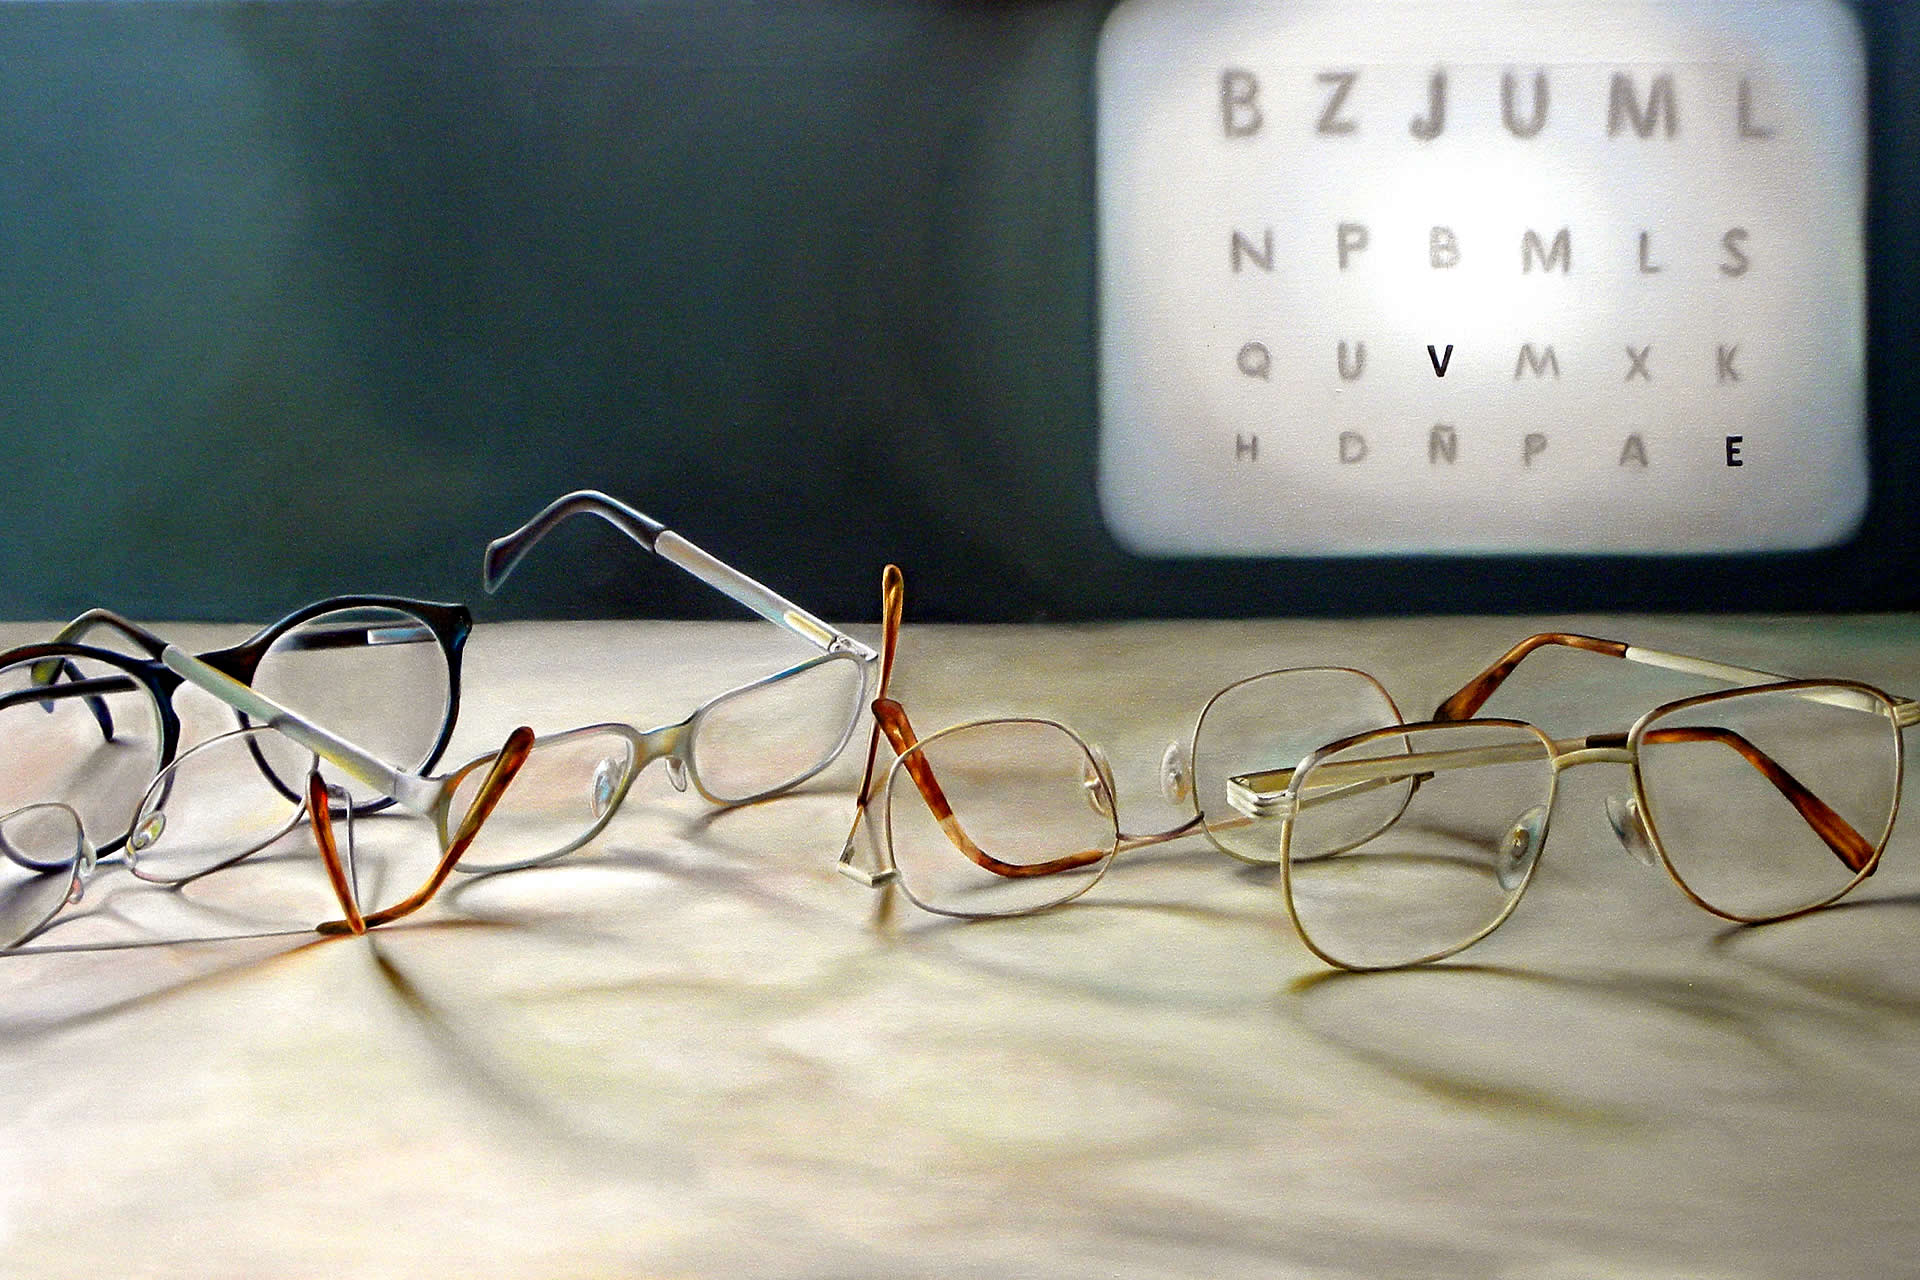 Lentes de contacto. Optica Optalvis, Su vista merece lo mejor  Optica.  Gafas de Sol. Prótesis oculares. Lentes polarizados en La Paz, Bolivia